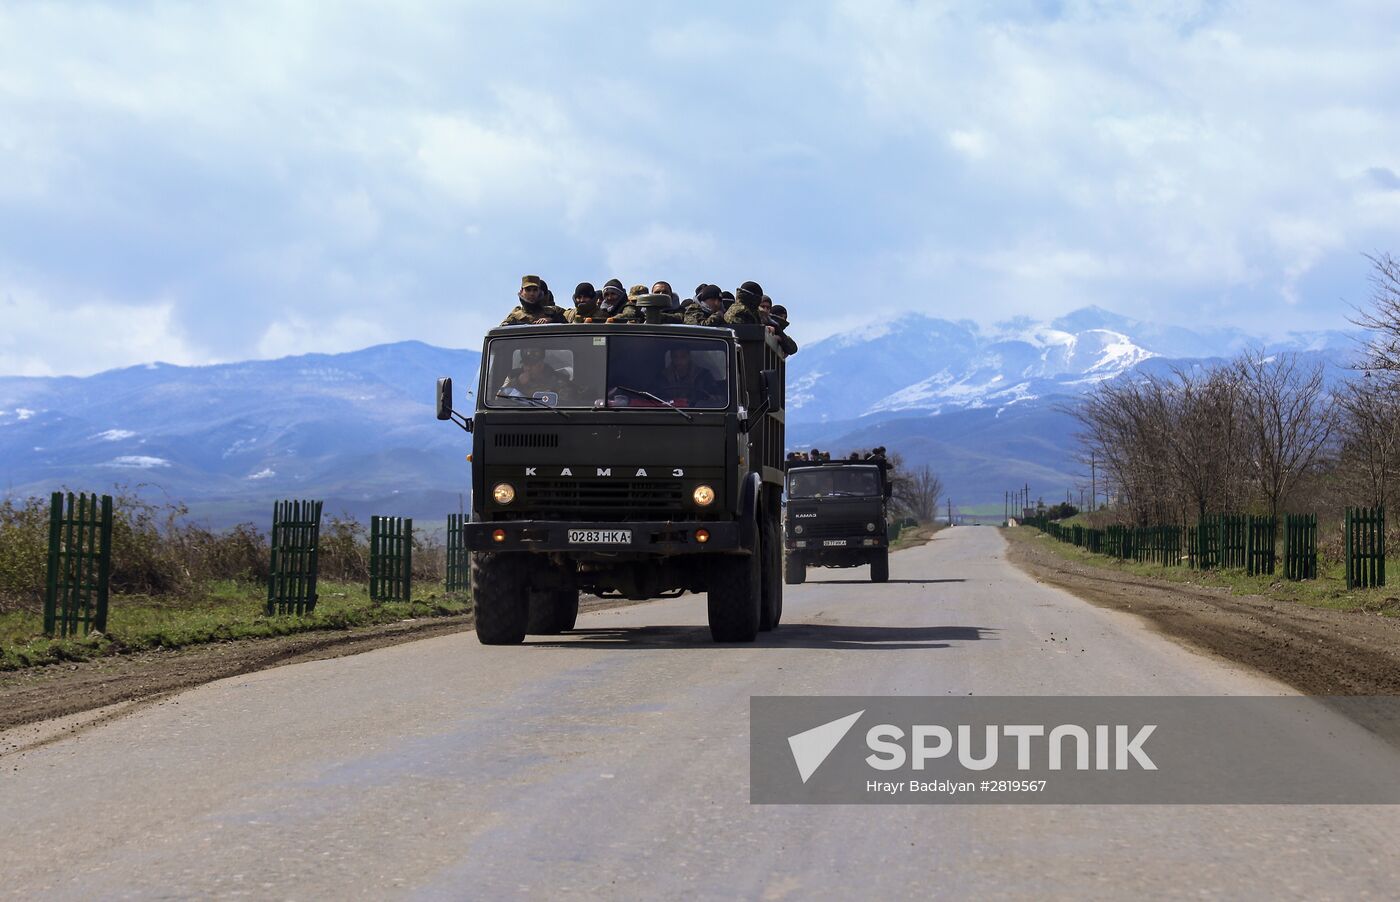 Karabakh conflict update